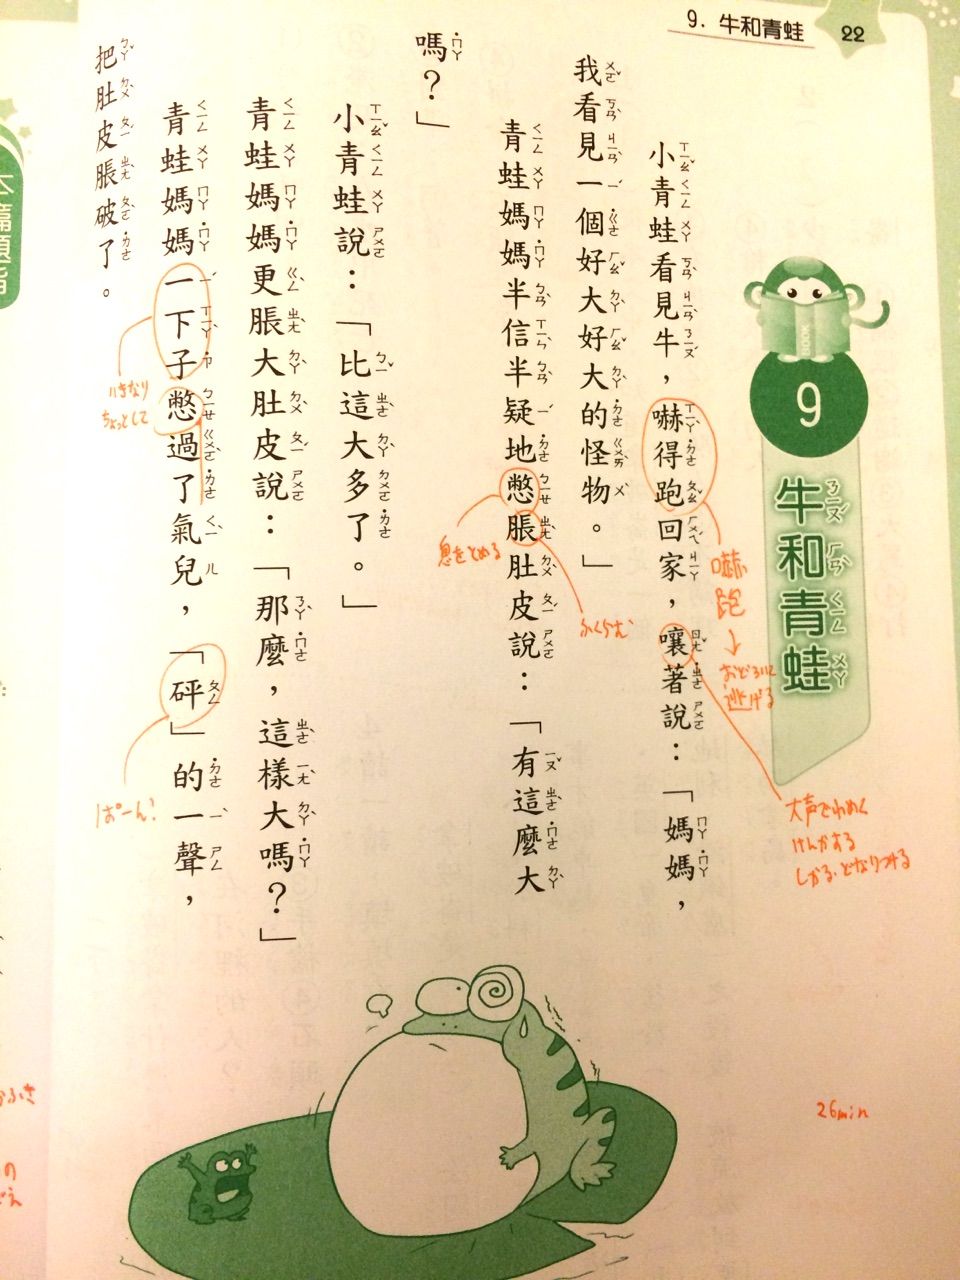 台湾の小学一年生向け国語教材の中で どれだけ死亡しているのか数えて